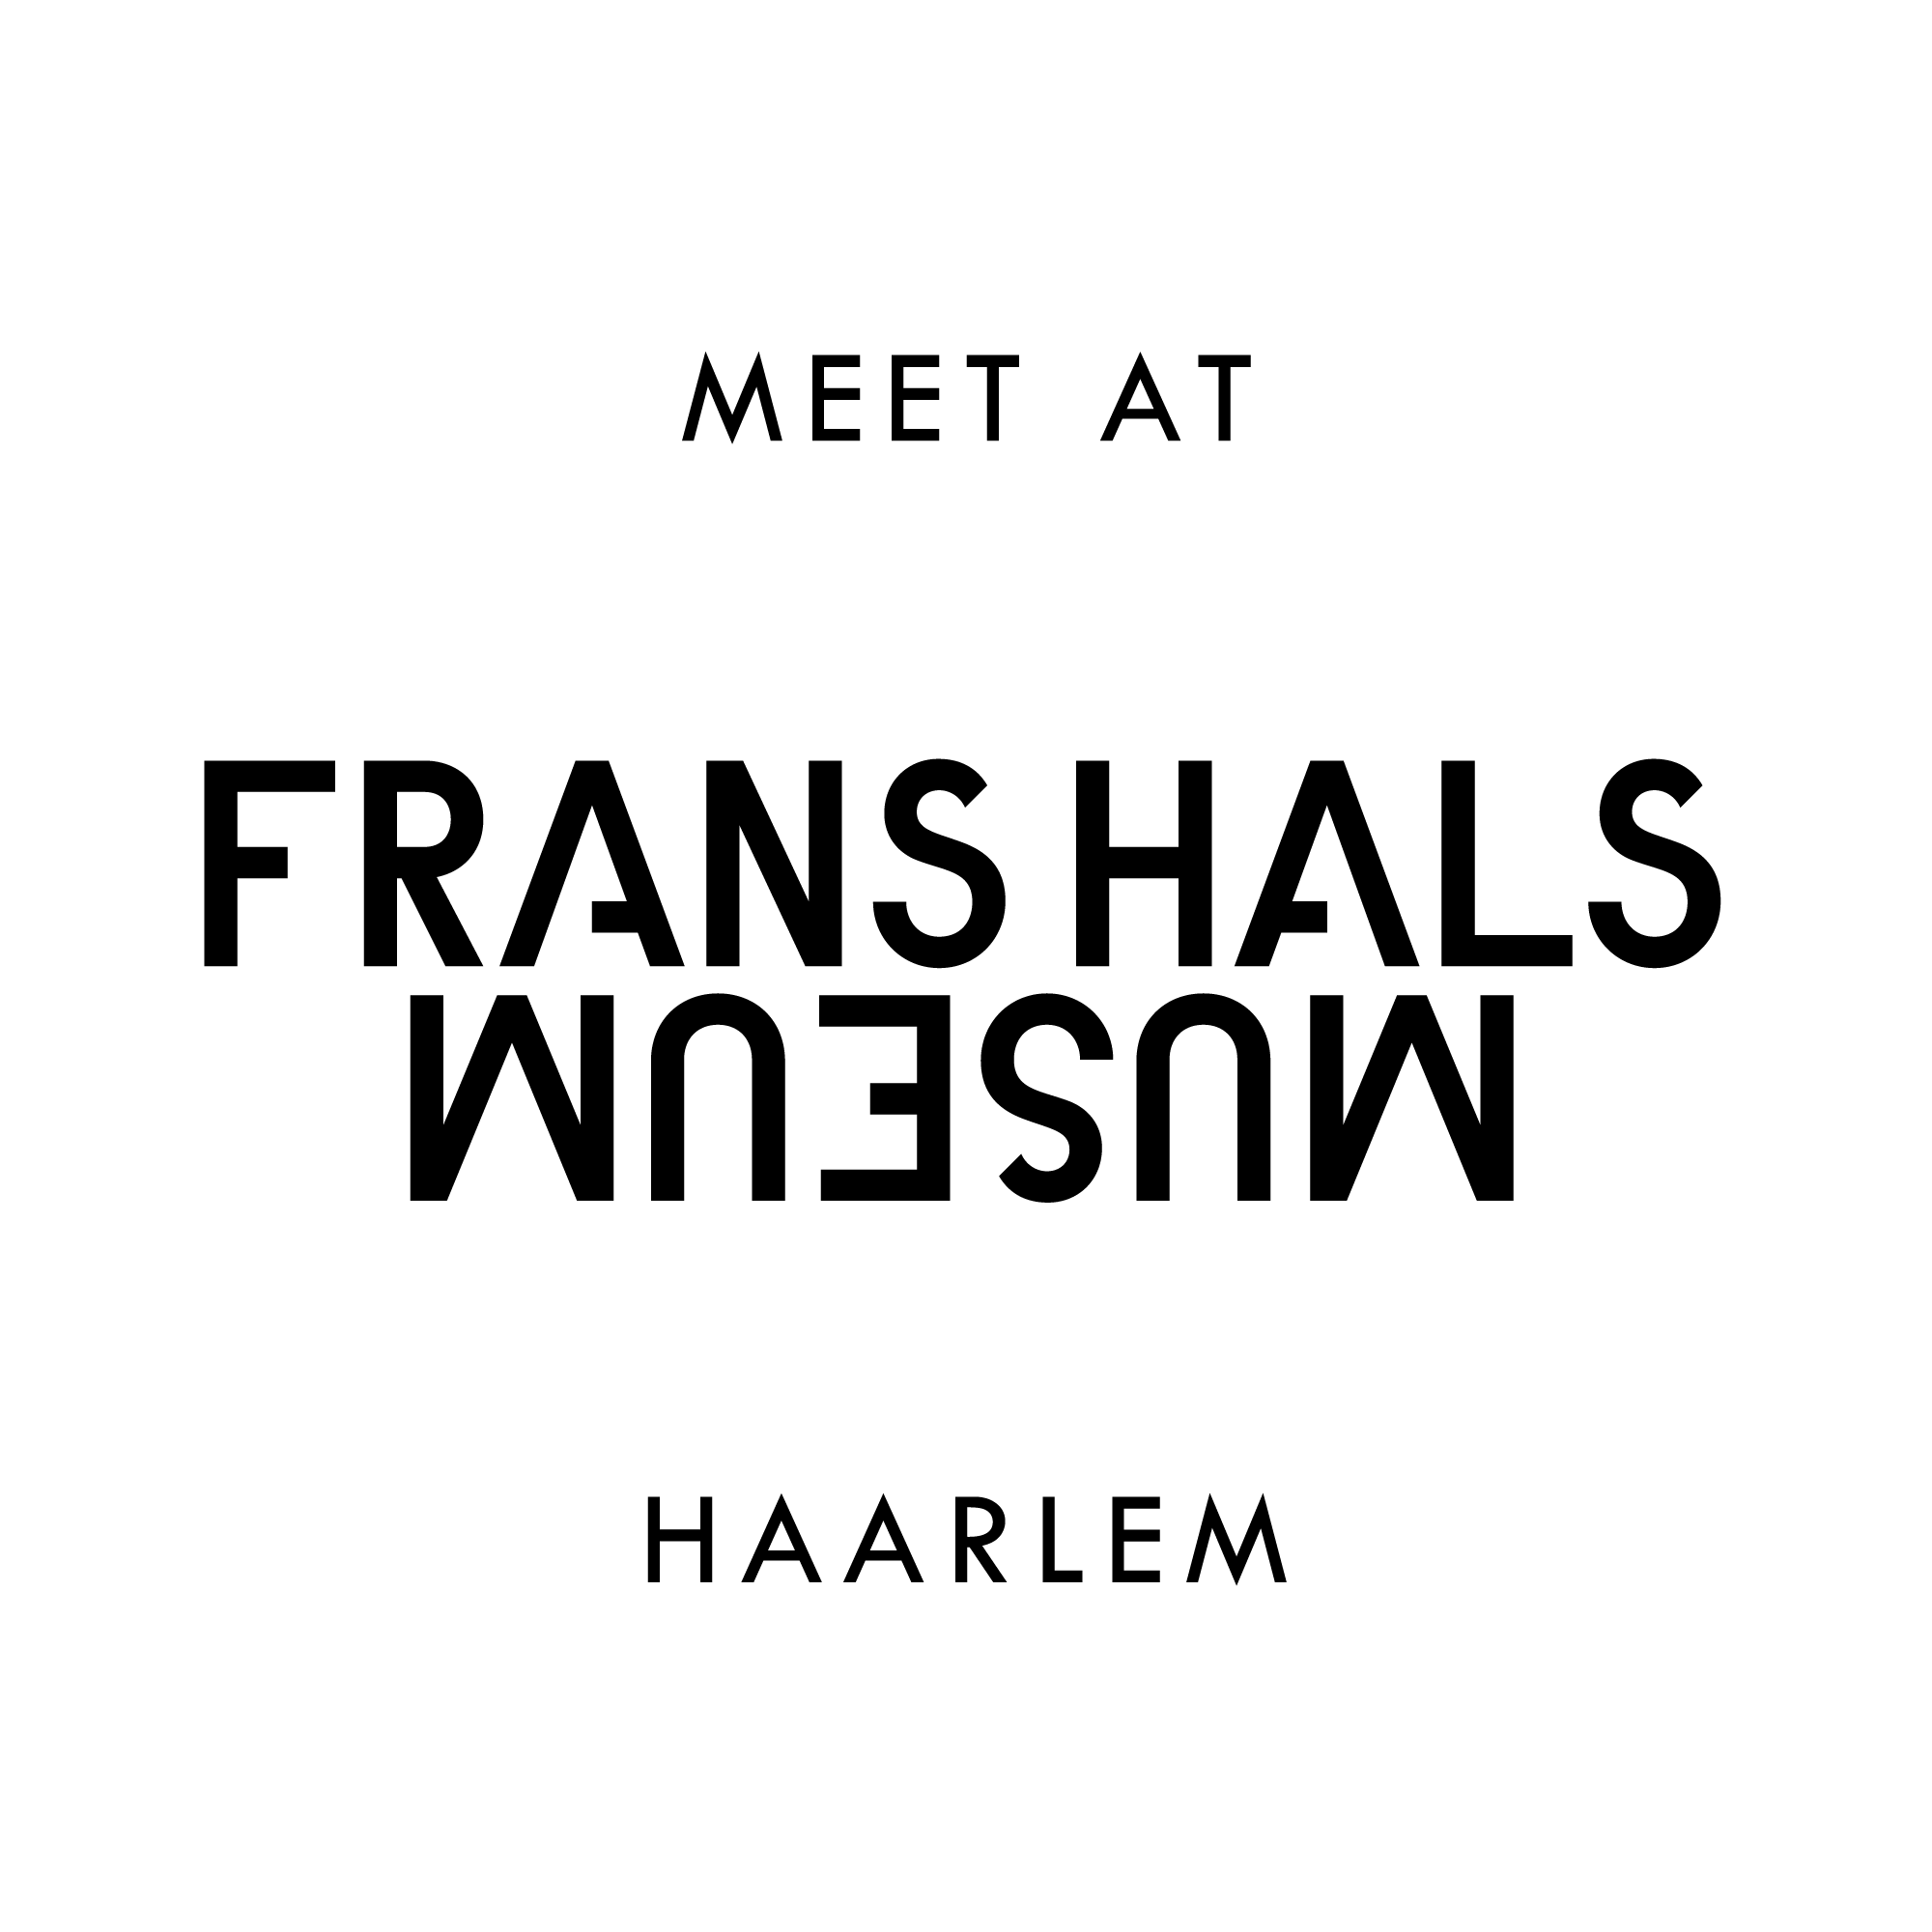 Frans Hals Museum logo